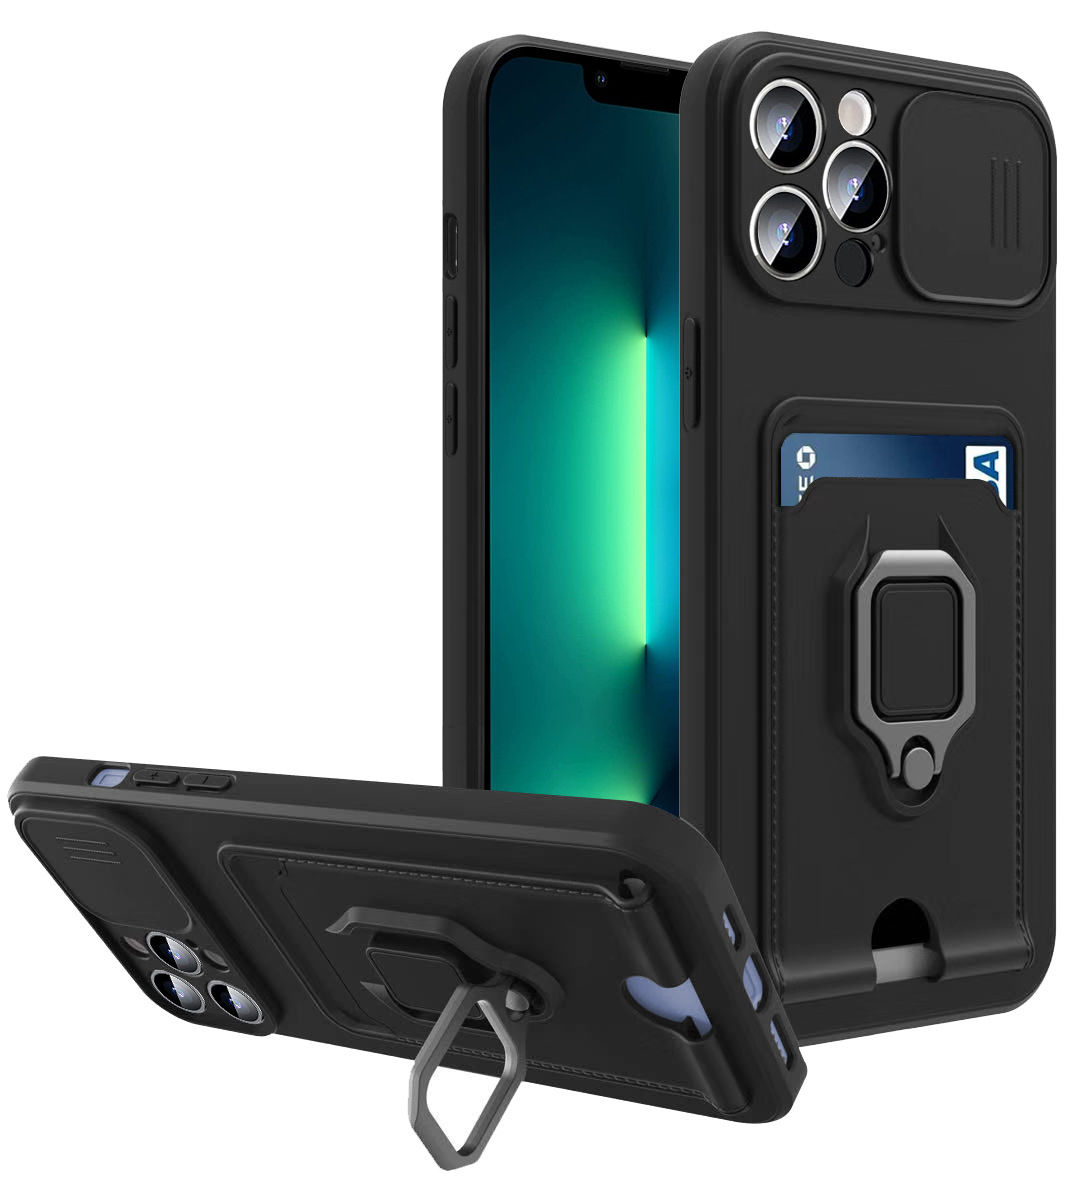 Kayar Kapak Kamera Koruma Cep Telefon Kılıfları Stand Adsorpsiyon Metal Plaka Yumuşak Esnek Telefon Kılıfı İPhone 12 13 Pro Max için